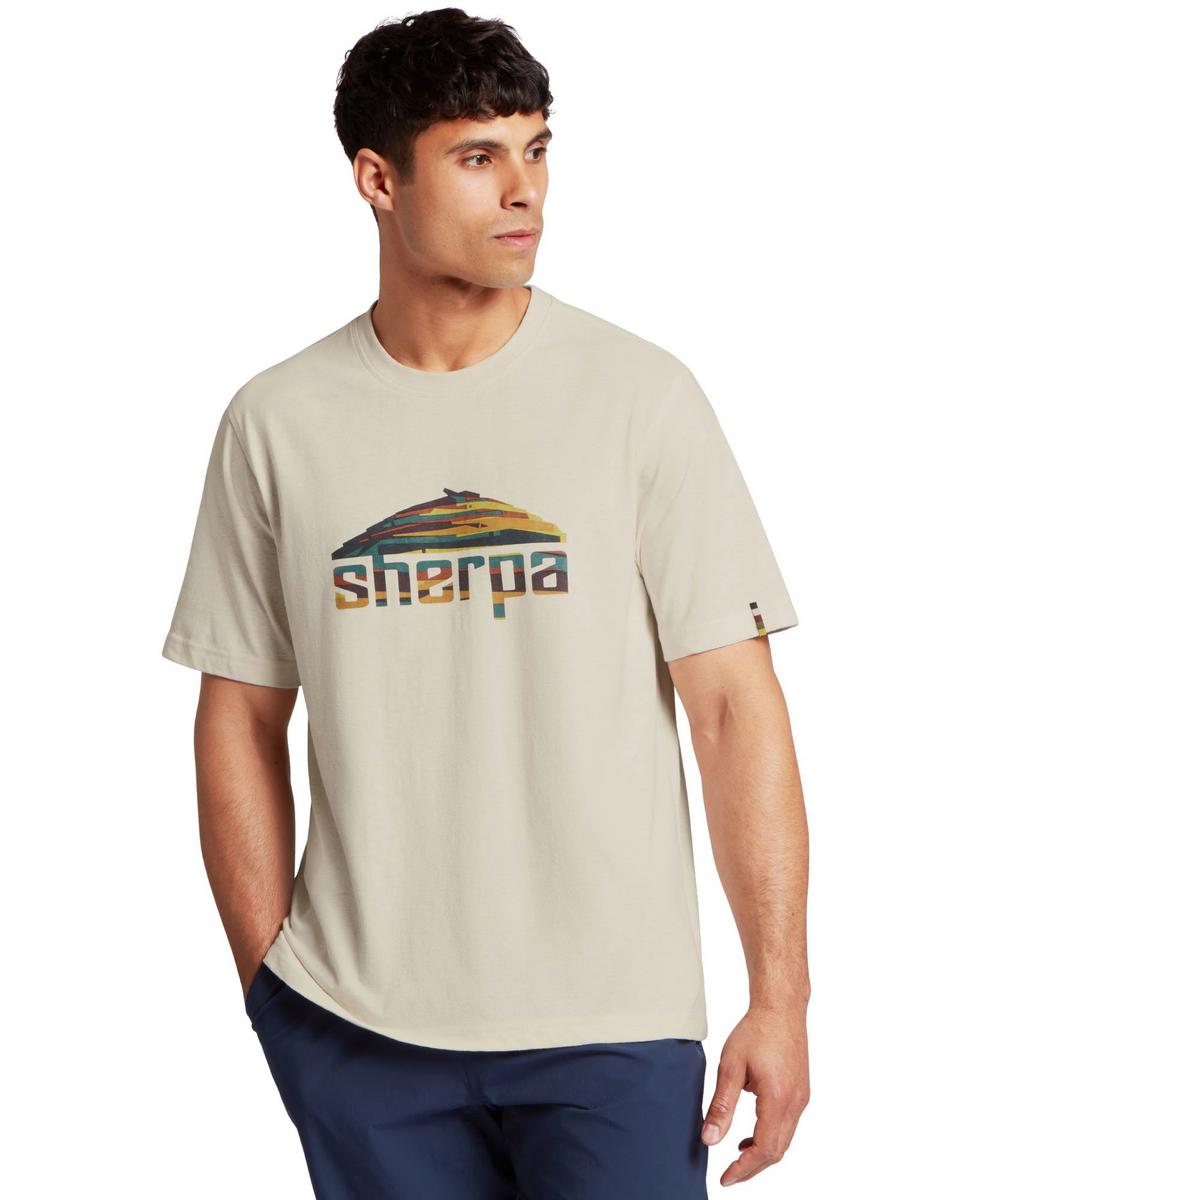 Sherpa Adventure Men's Sherpa Mountain T-Shirt - Cream